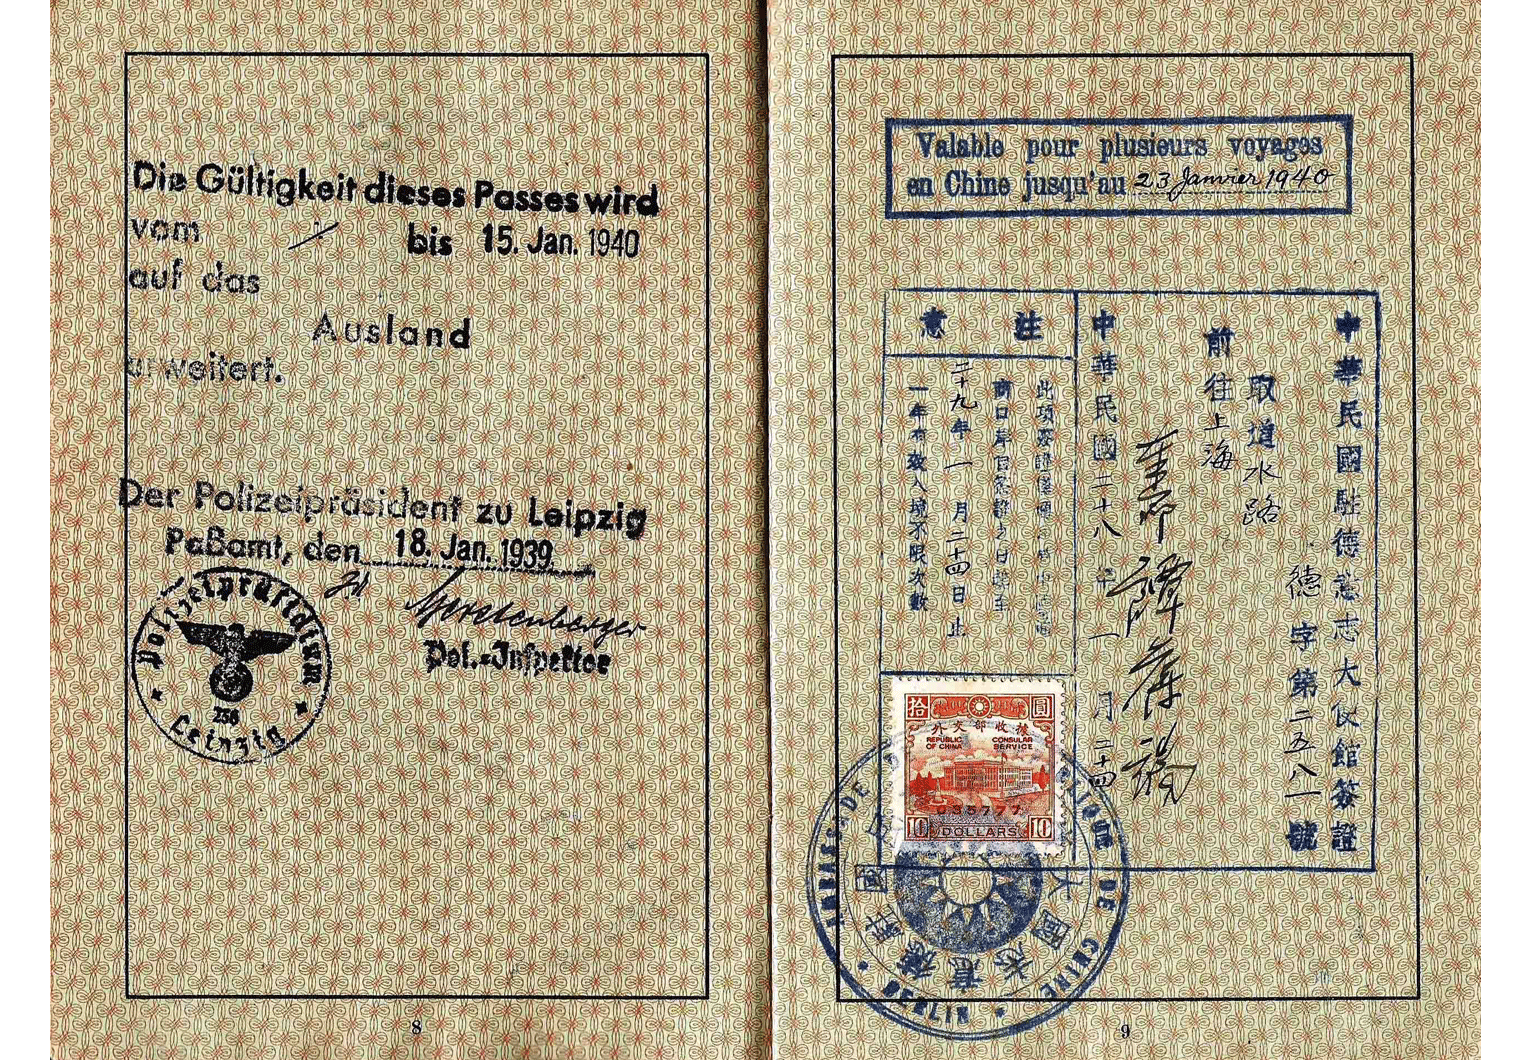 WW2 Jewish passport visa for Shanghai